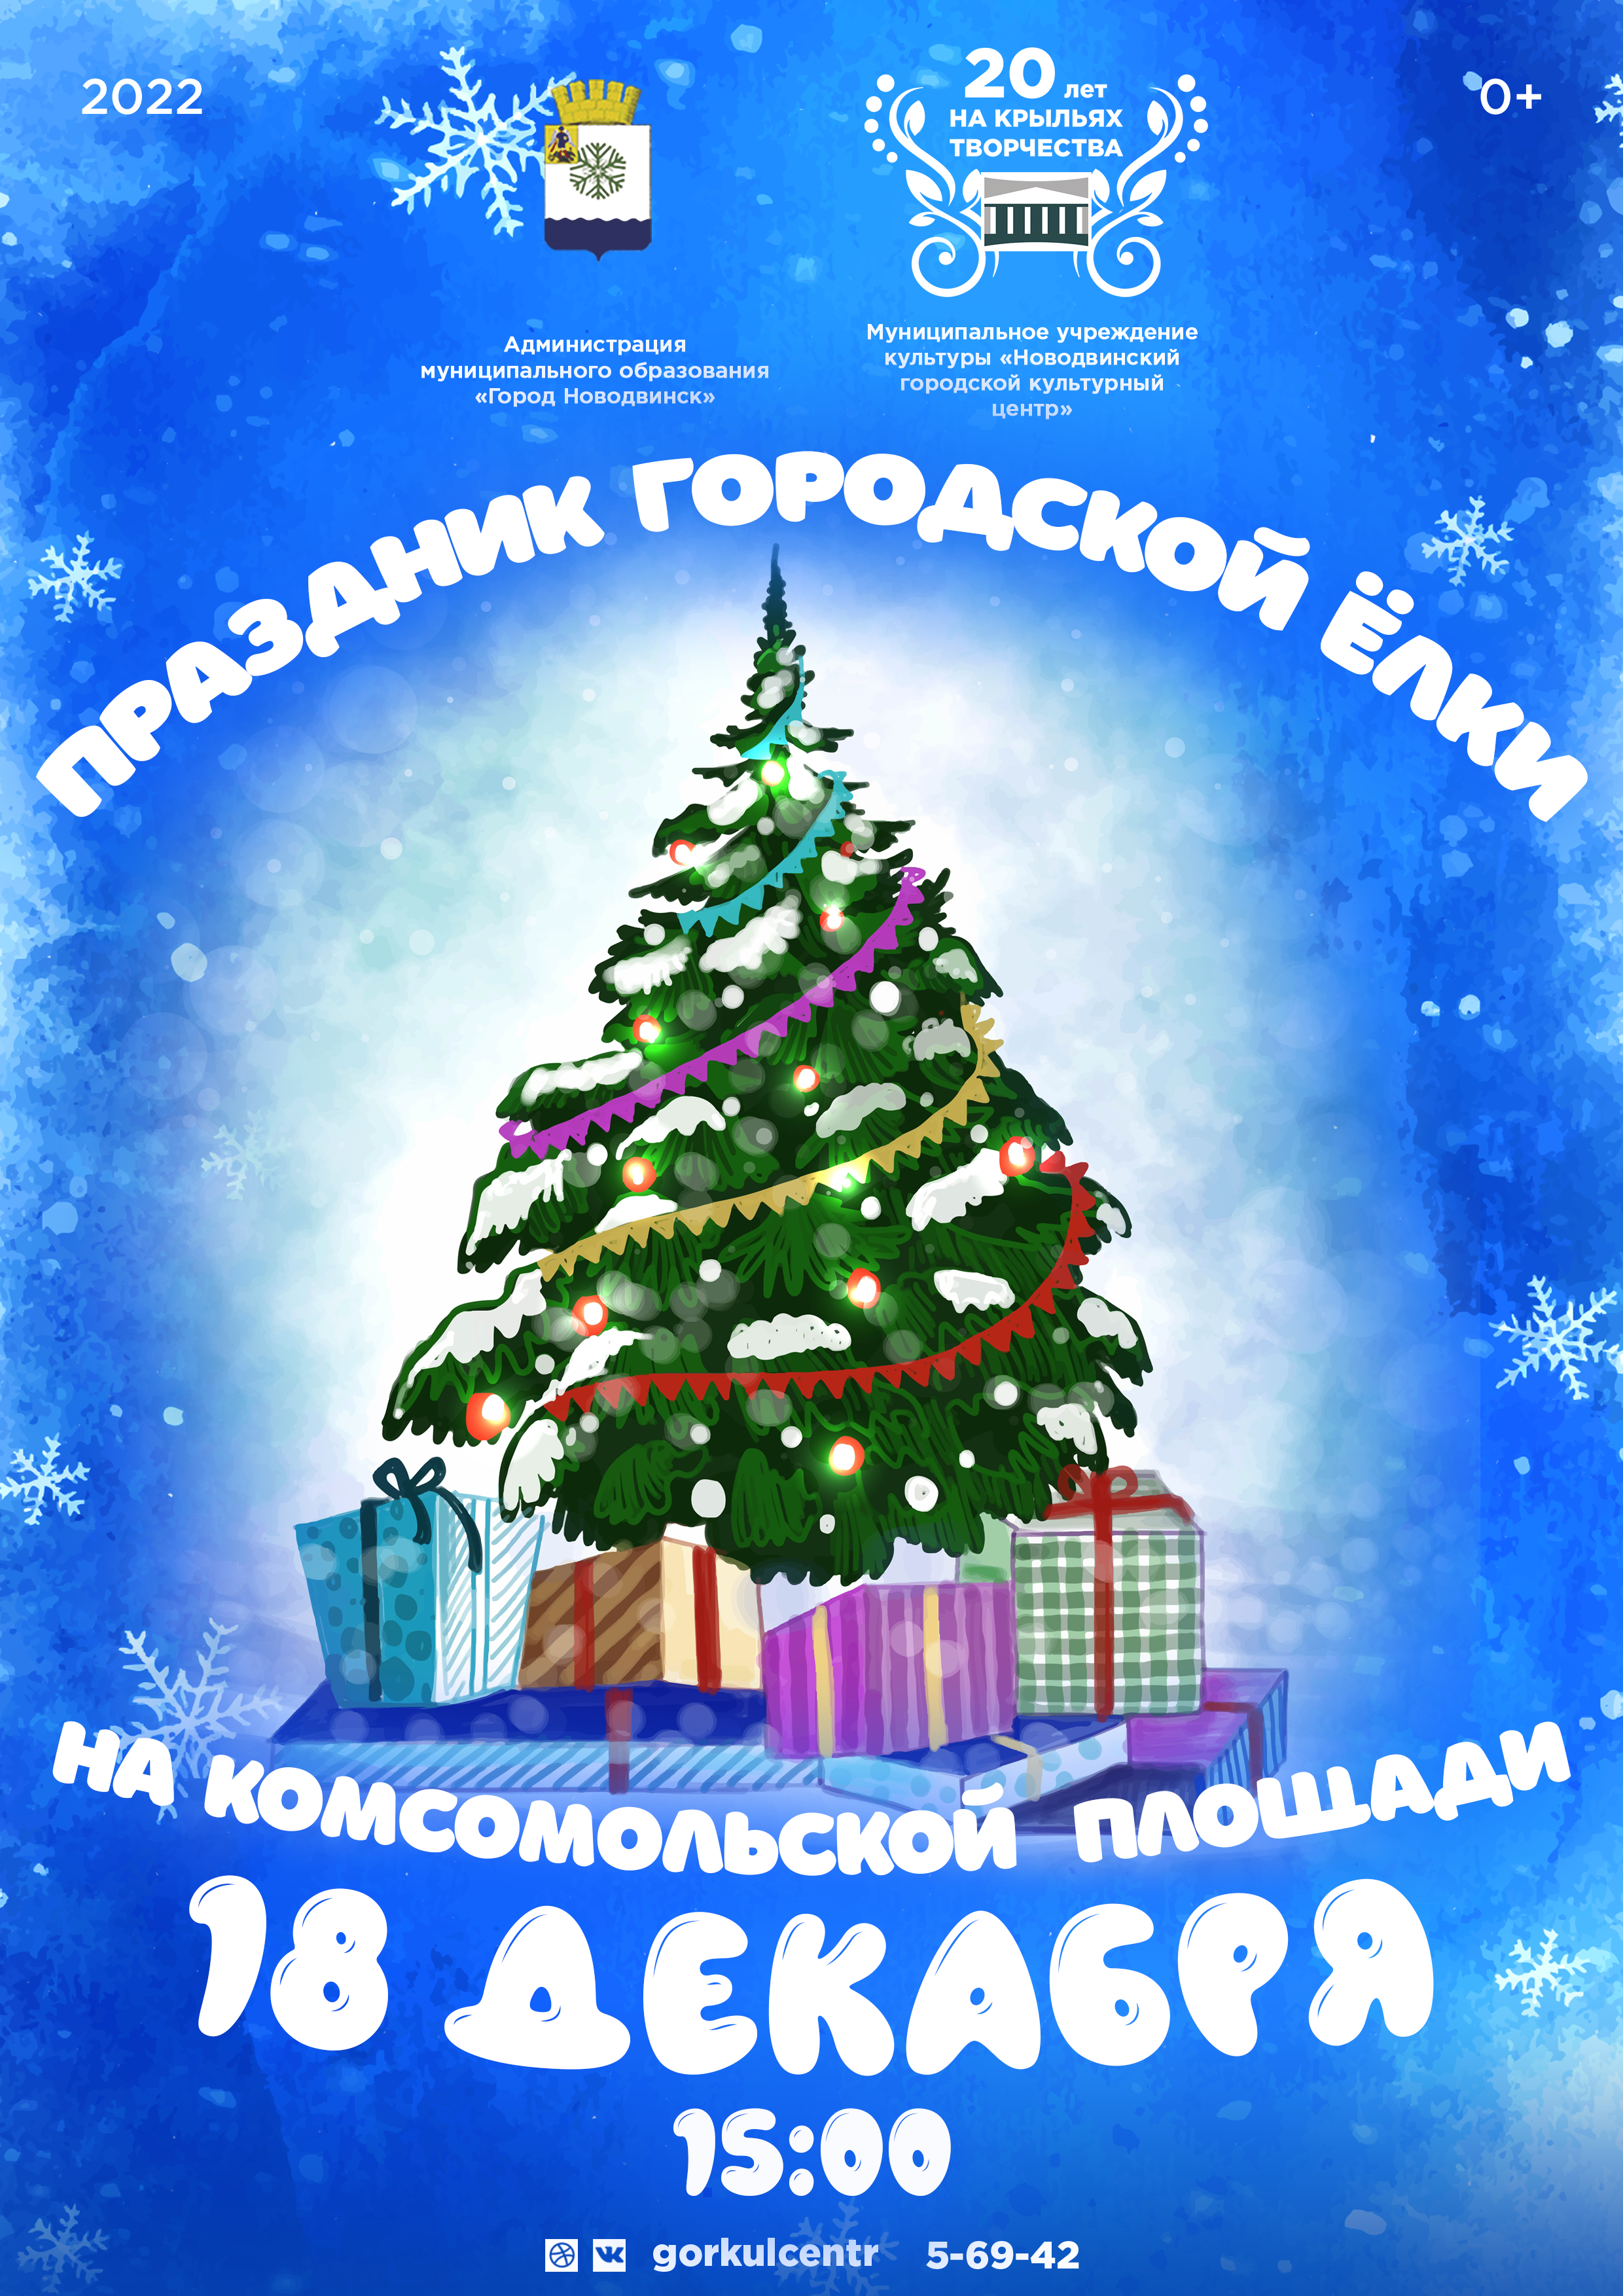 Дорогие гости и жители города! Уже в это воскресенье 18 декабря на Комсомольской площади в 15:00 пройдёт праздник городской ёлки!